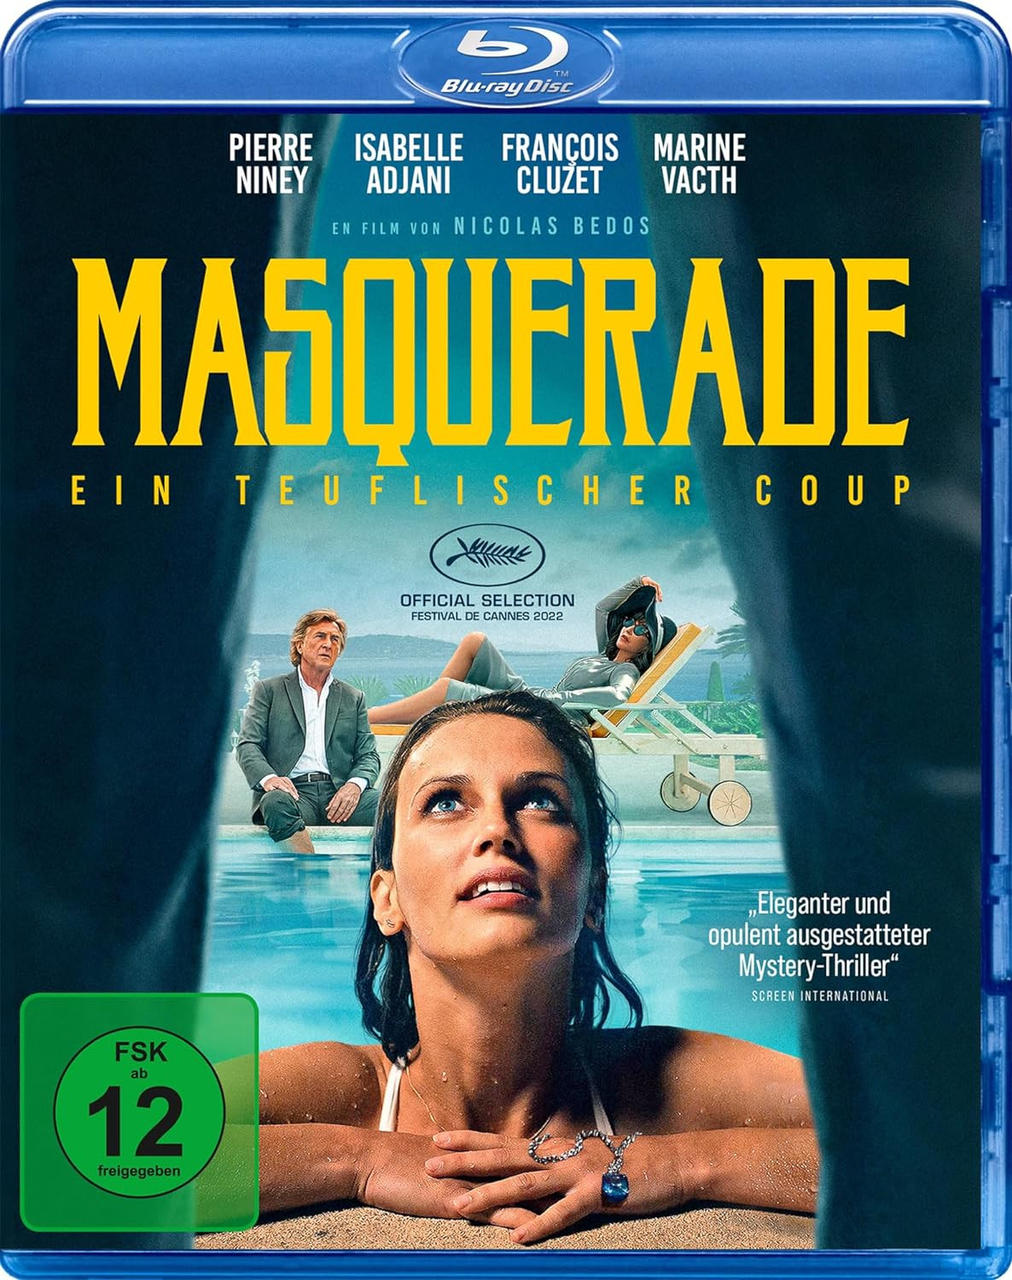 Coup Blu-ray - Masquerade Ein teuflischer